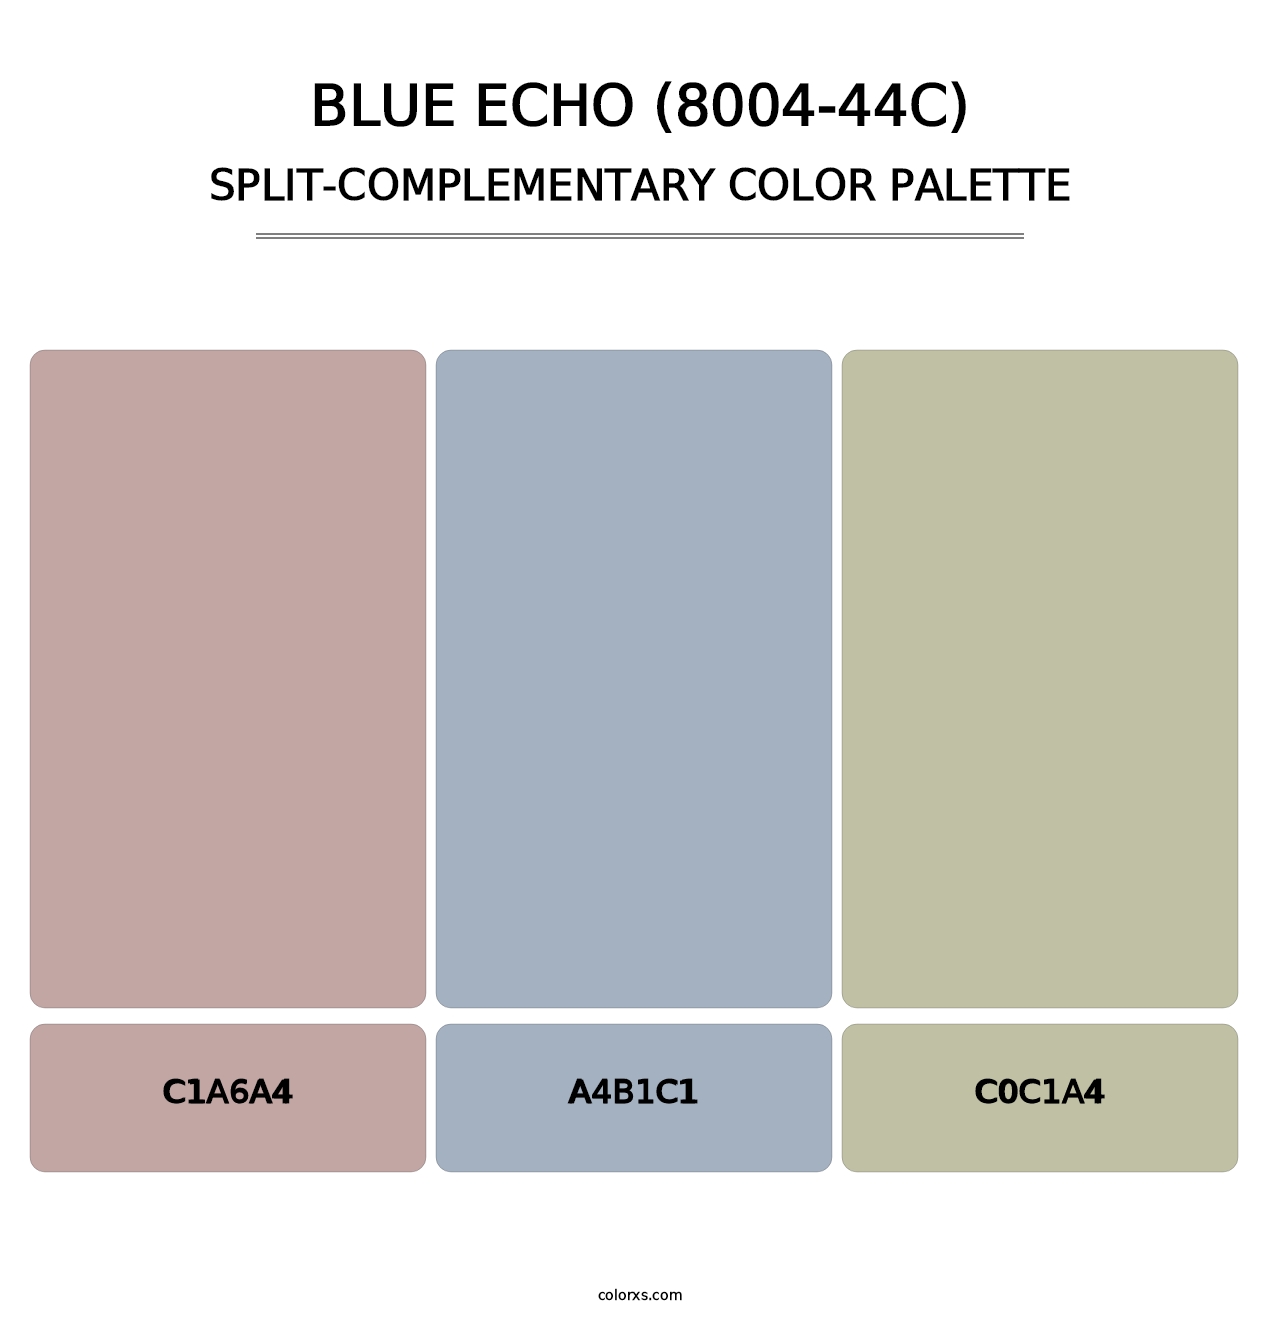 Blue Echo (8004-44C) - Split-Complementary Color Palette